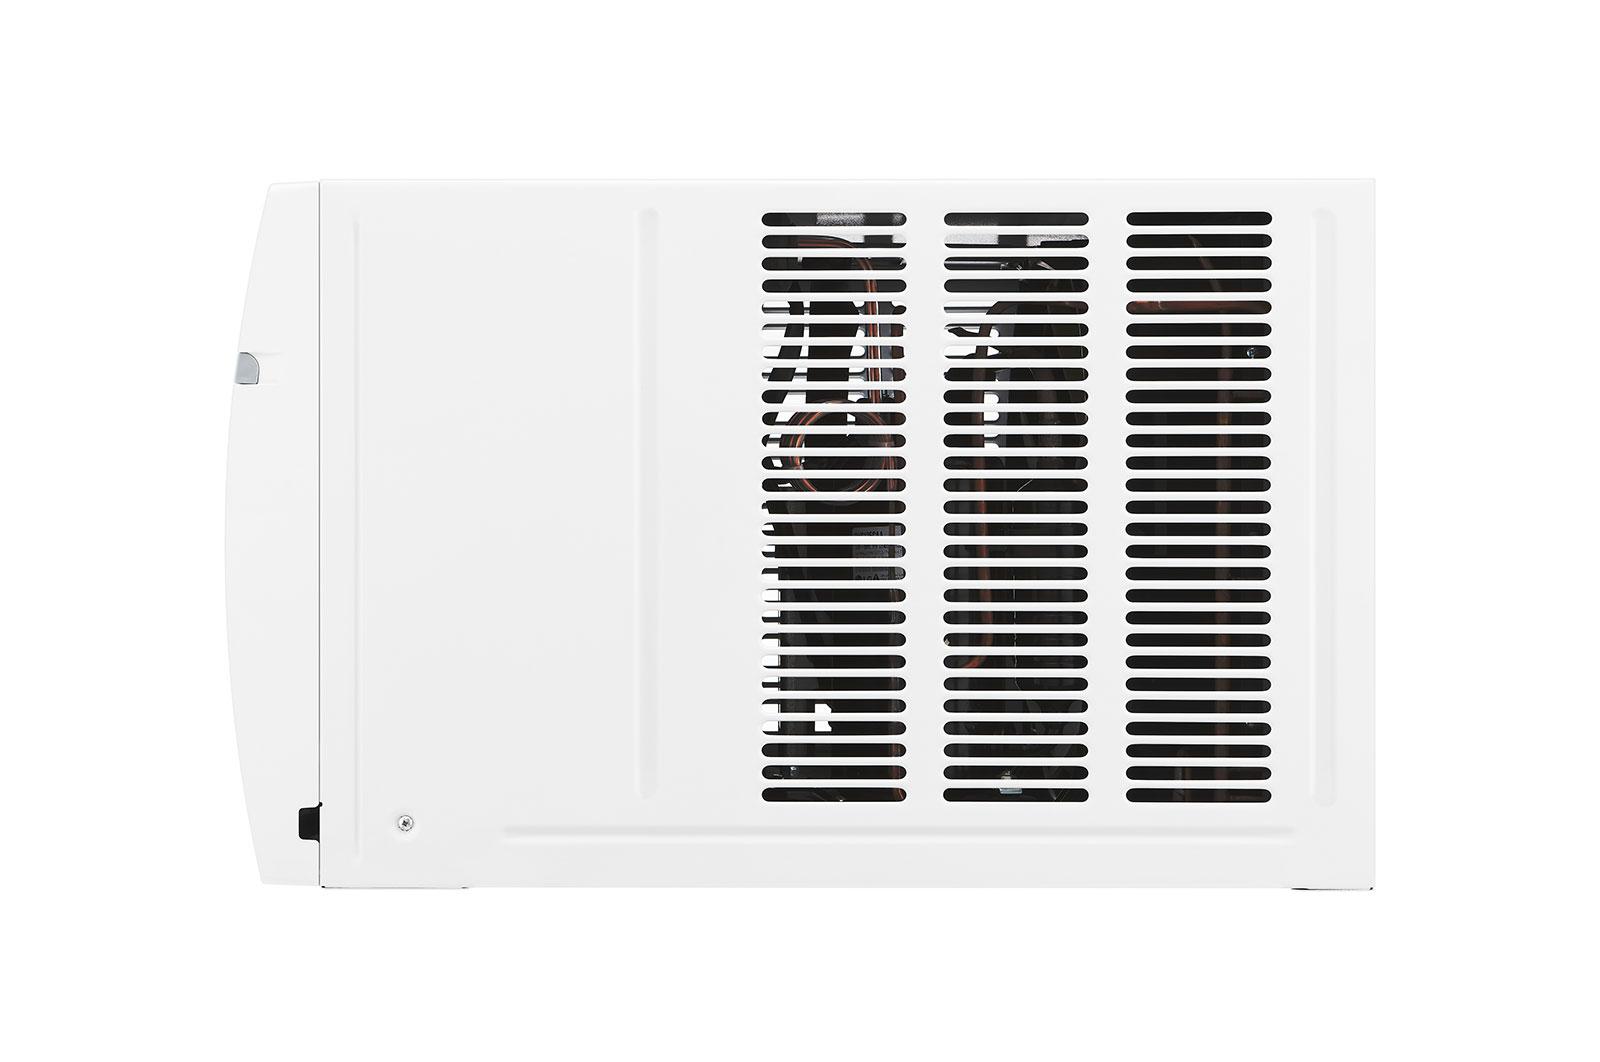 Lg LW1821ERSM 18,000 Btu Smart Wi-Fi Enabled Window Air Conditioner